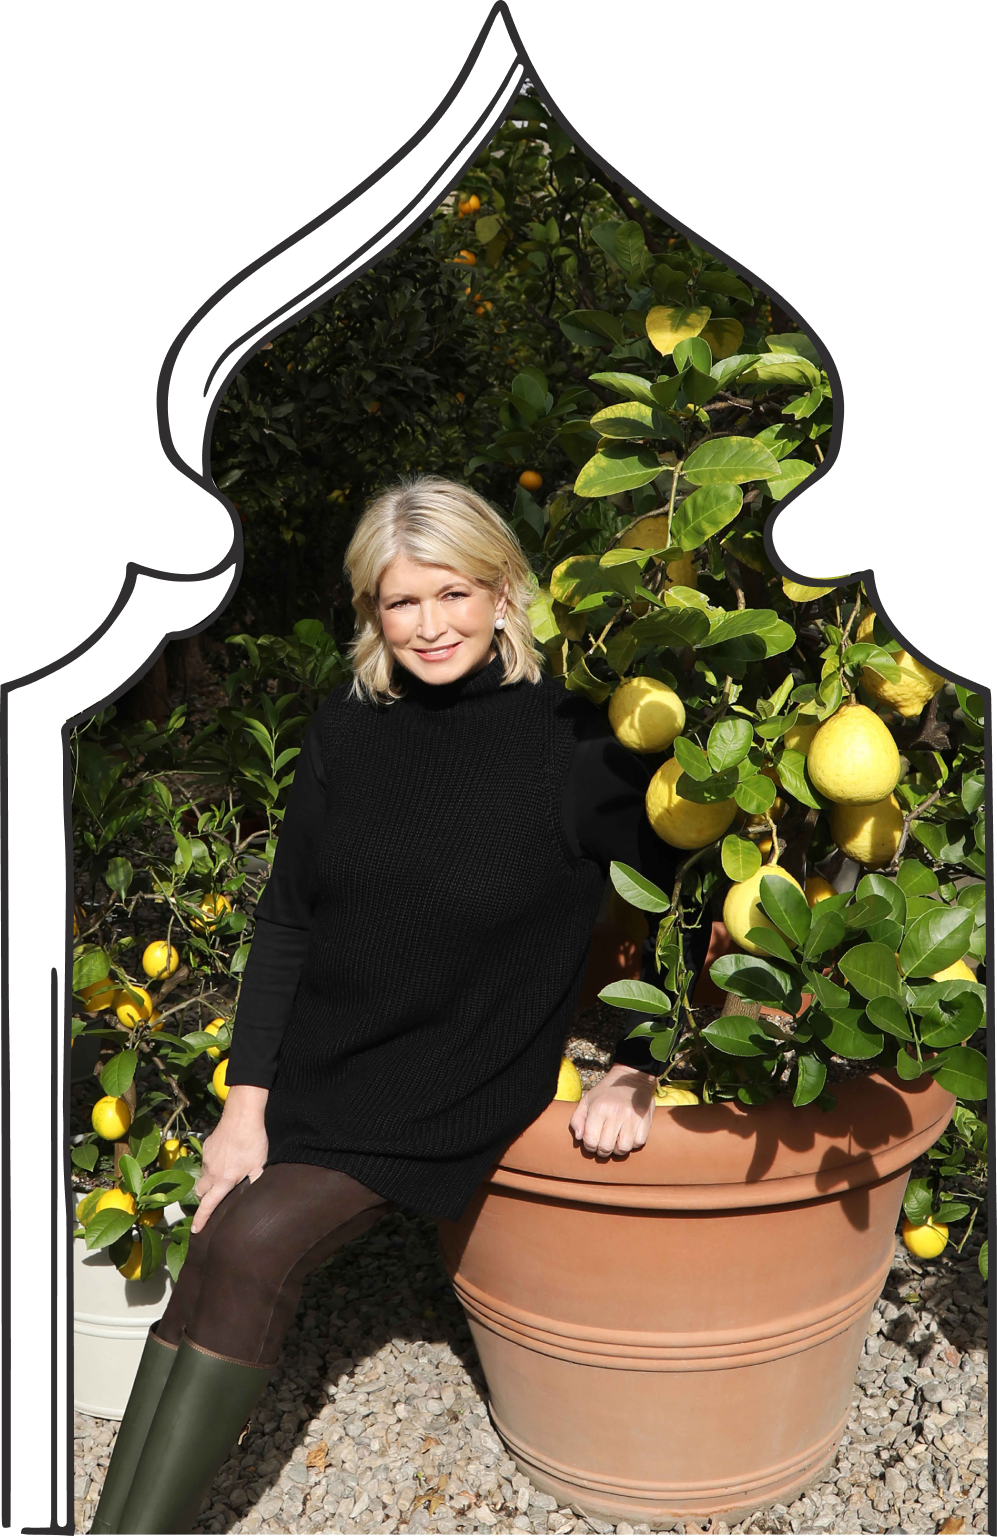 Martha Stewart leaning on a lemon tree in a pot. 